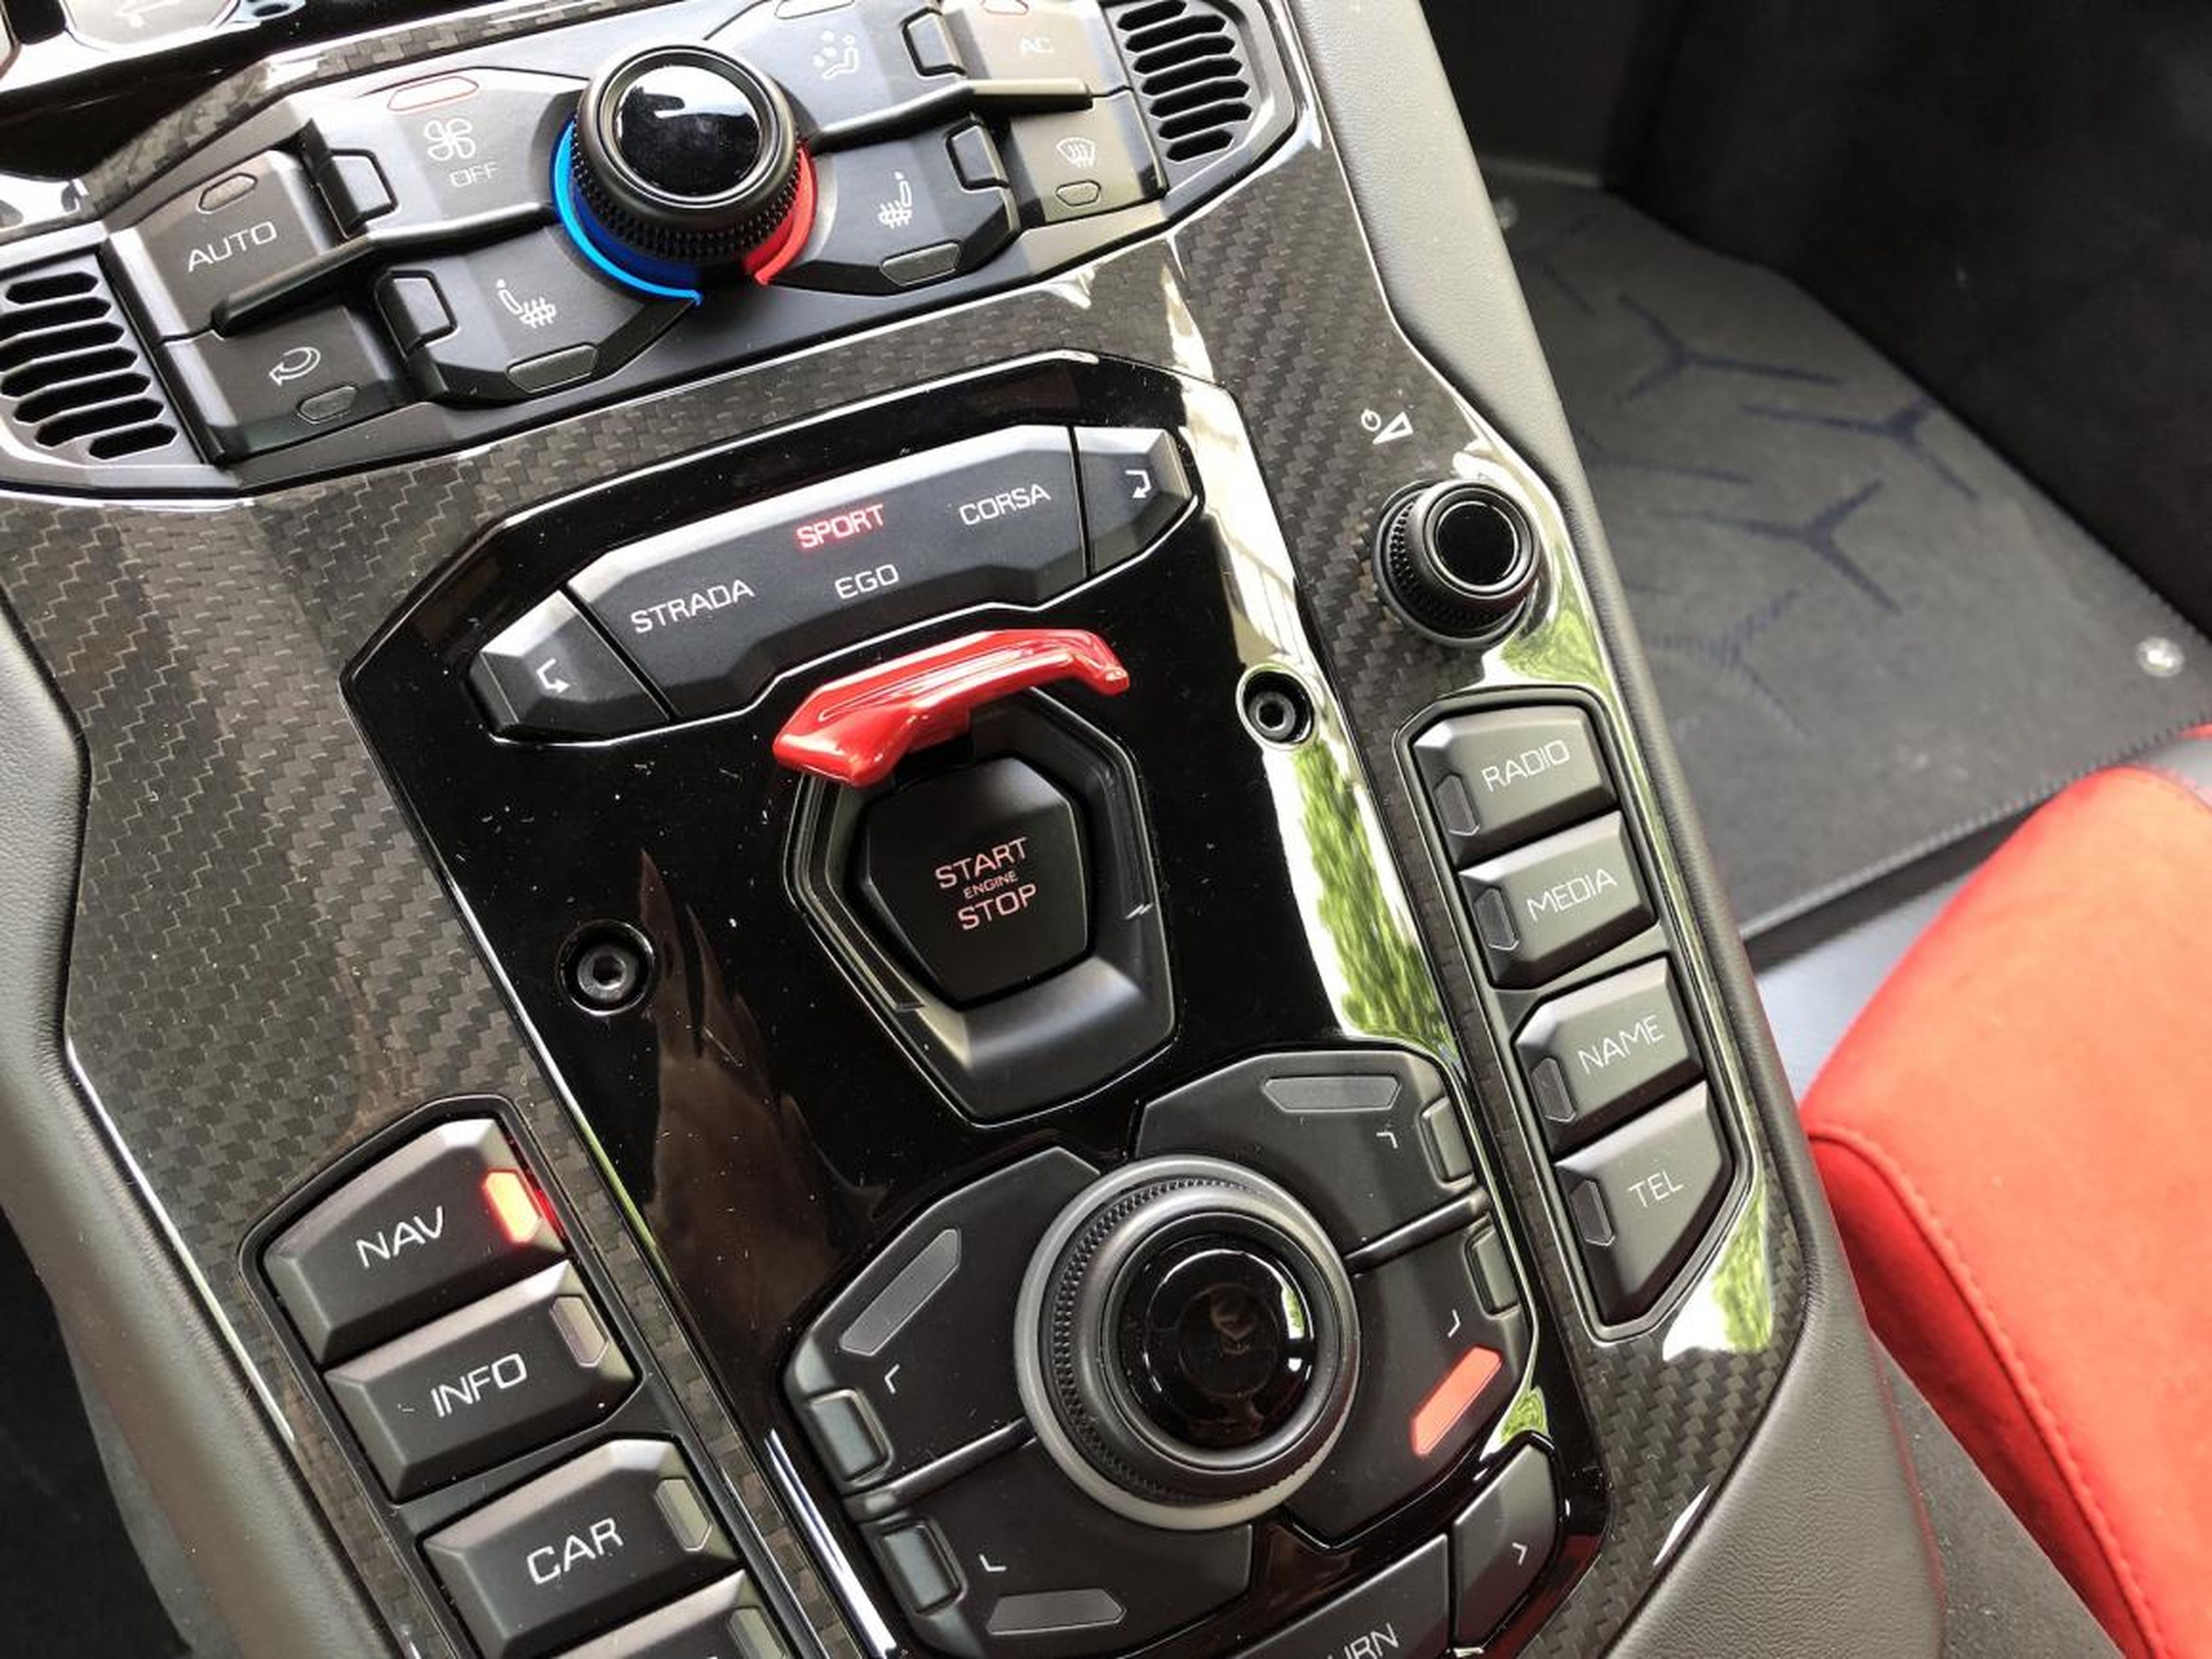 ¡Súbelo y enciéndelo! El sonido de un Lambo es uno de los grandes placeres auditivos que encontrarás. Los botones del Aventador ofrecen los modos Strada (carretera), Sport, Corsa (pista) y un modo individual "Ego".